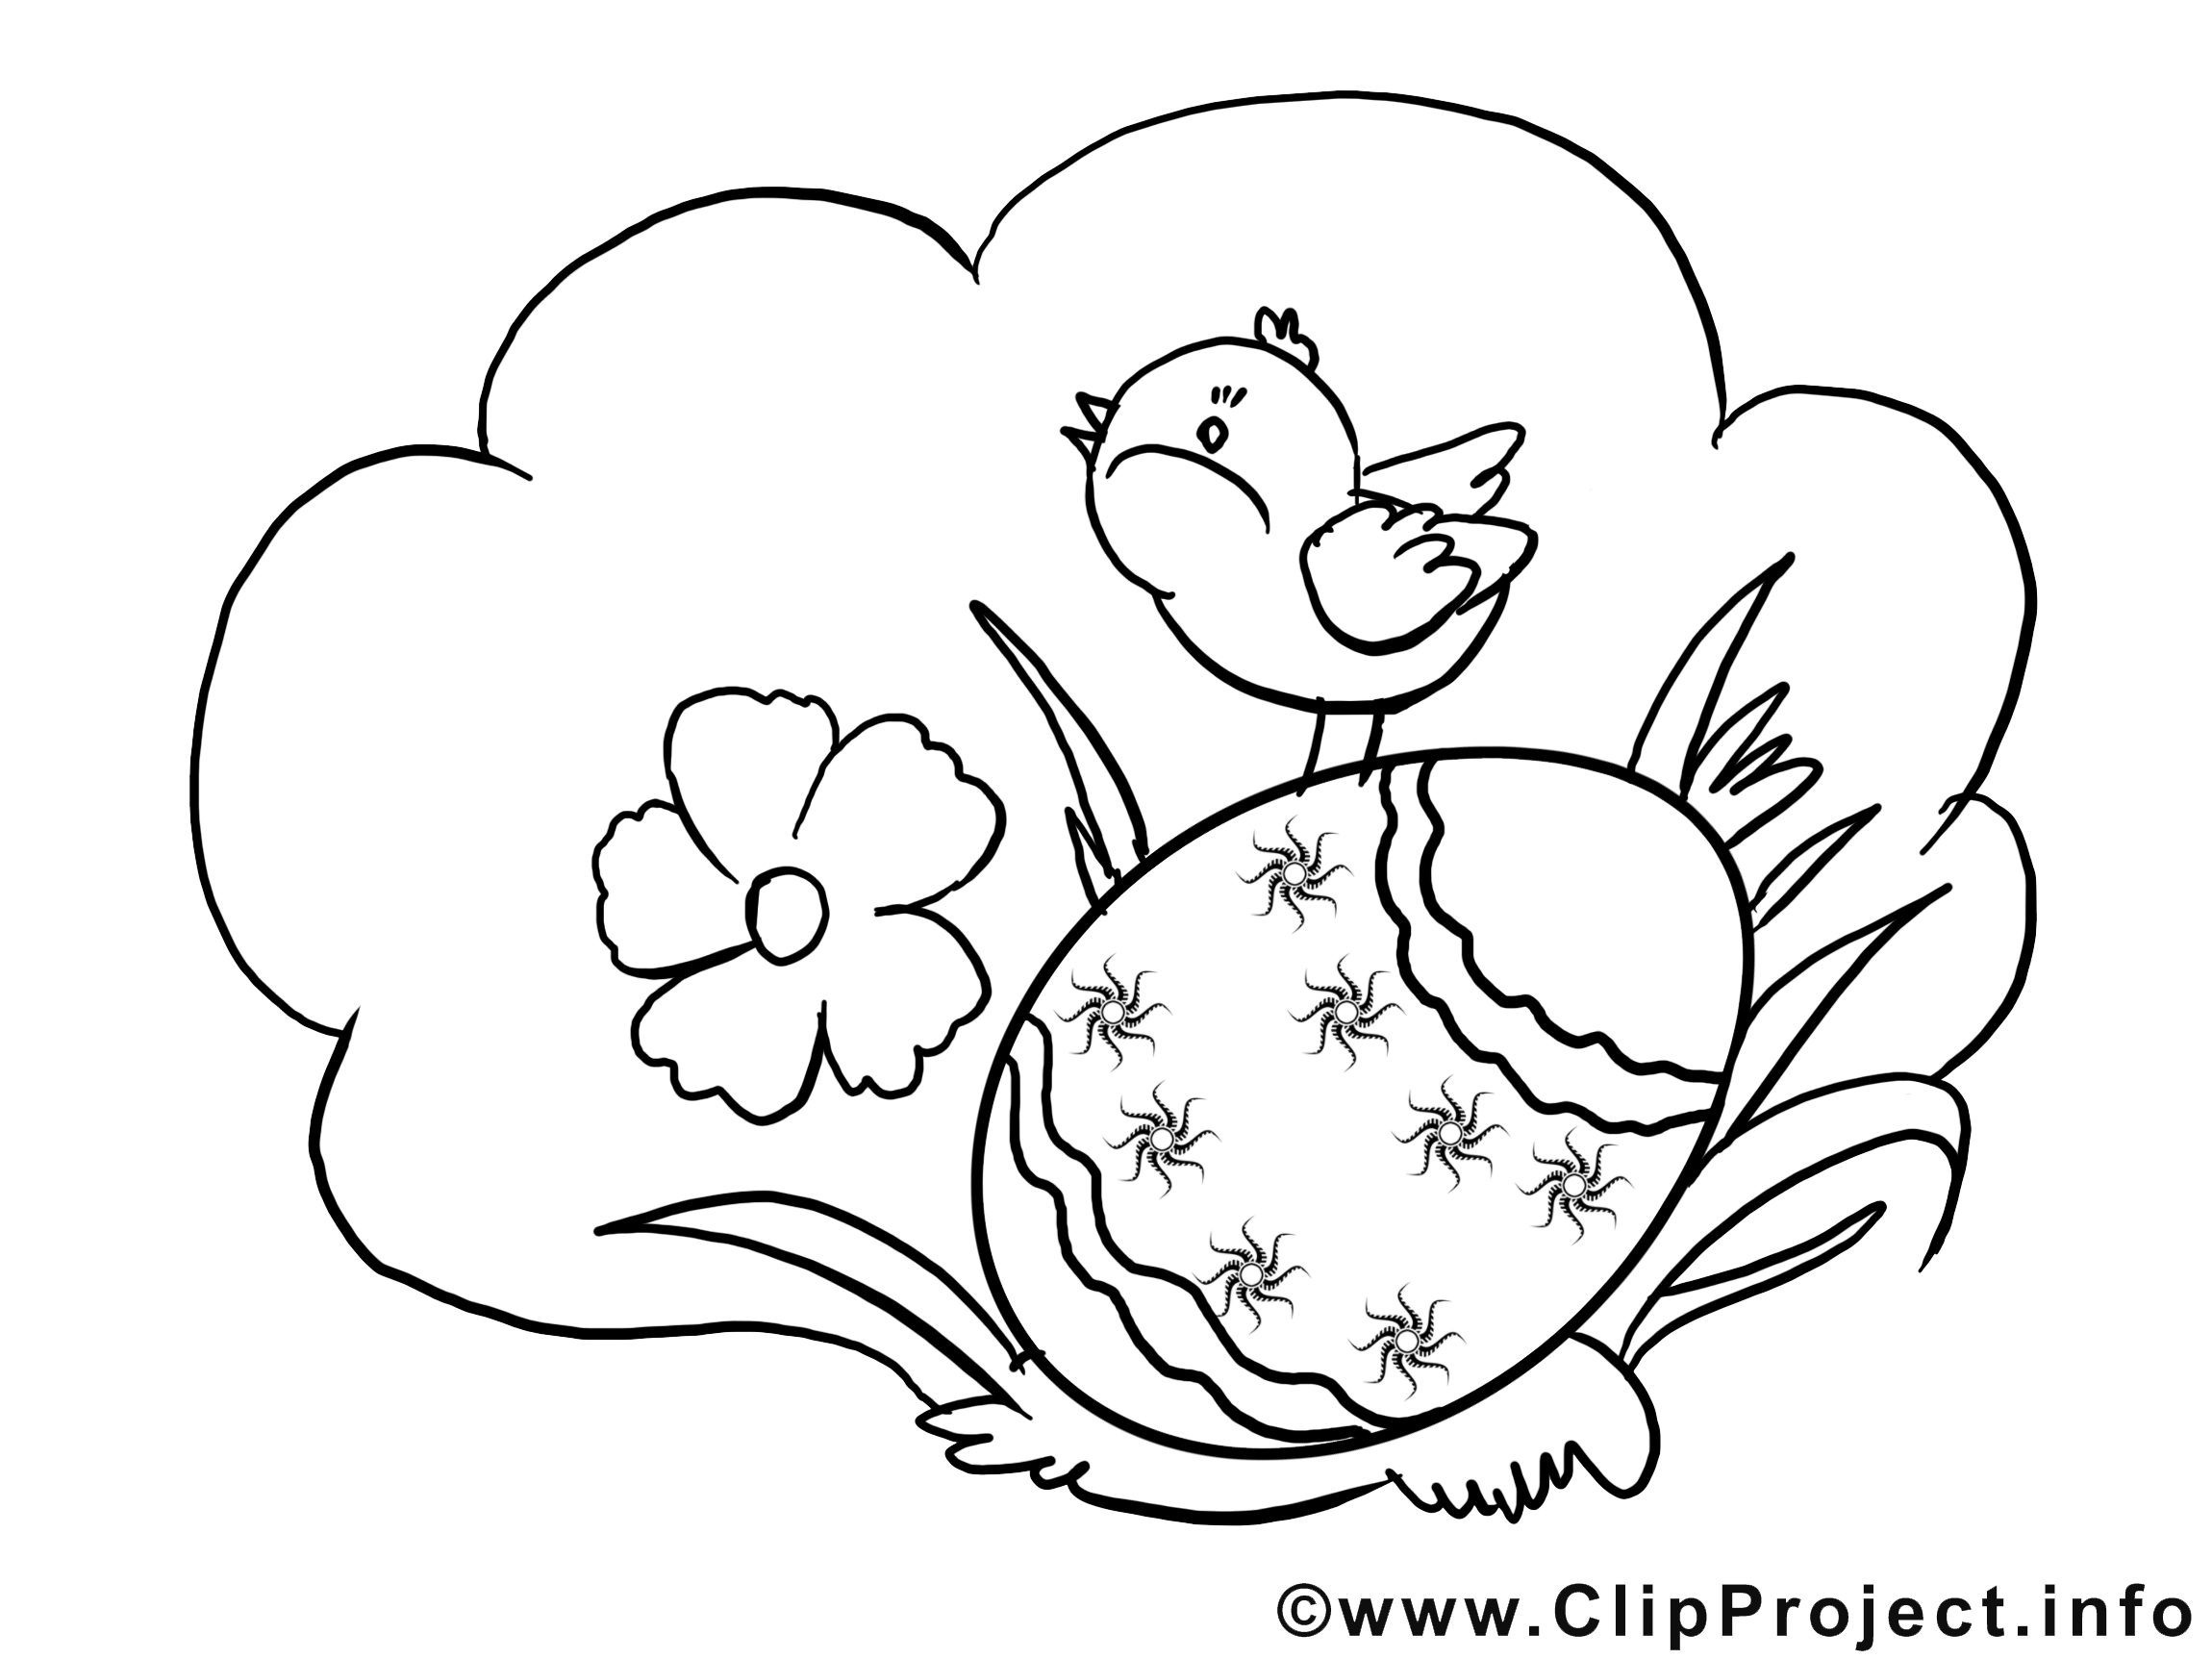 Herbe poussin clipart – Pâques dessins à colorier